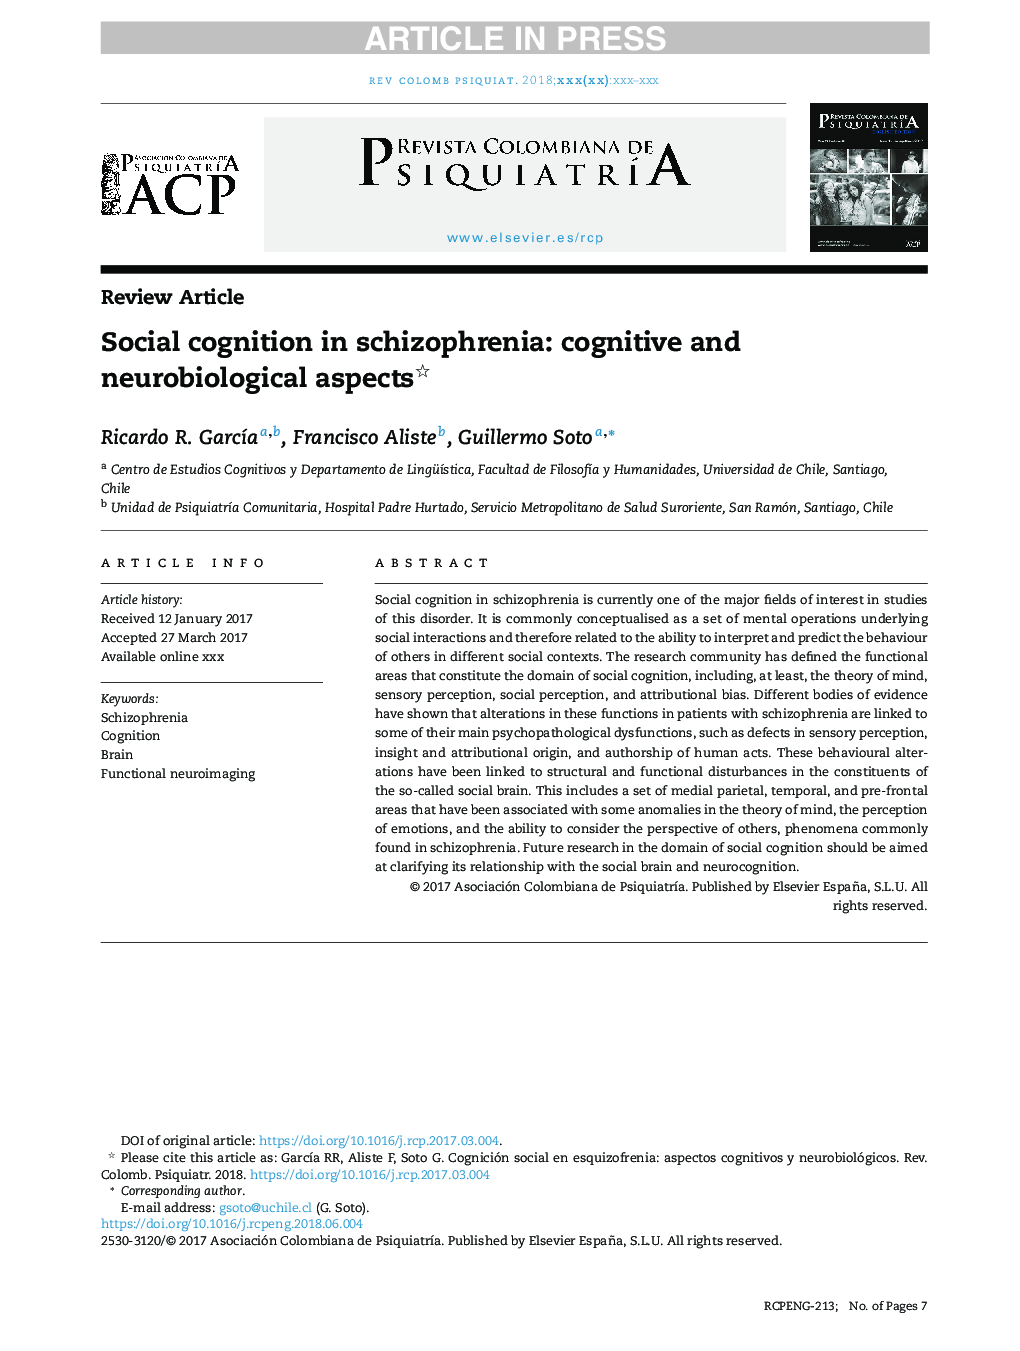 شناخت اجتماعی در اسکیزوفرنی: جنبه های شناختی و عصبی